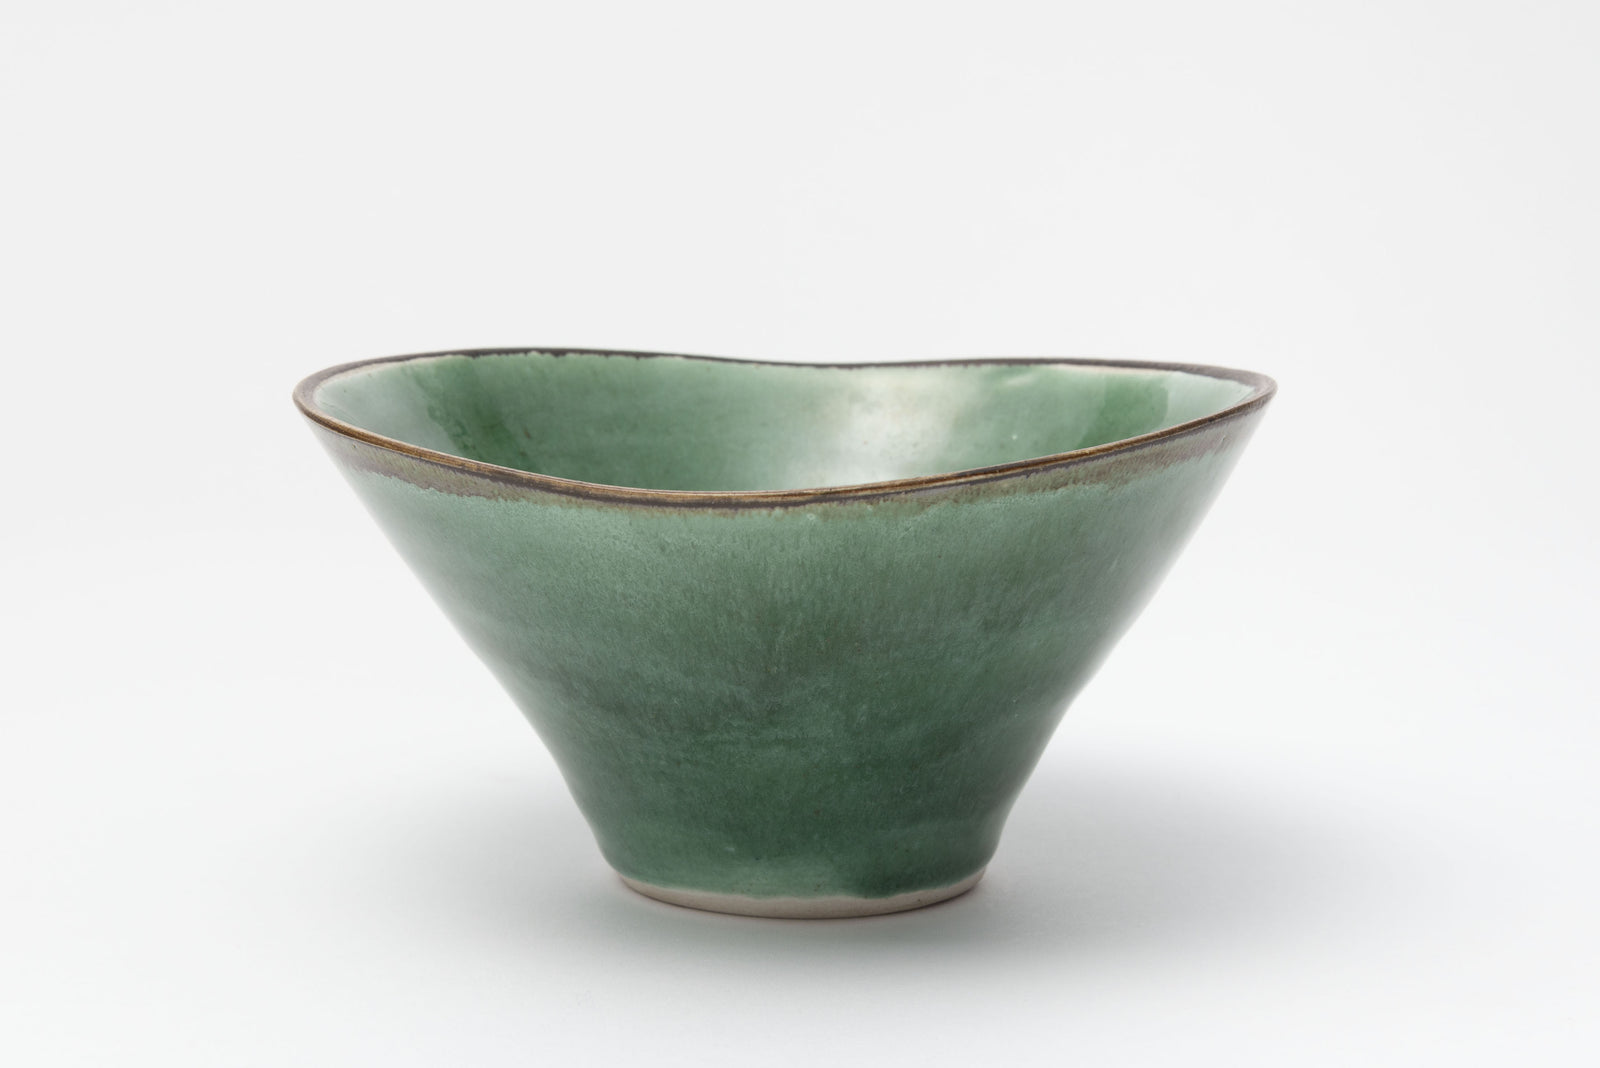 緑釉碗 / Green glazed bowl